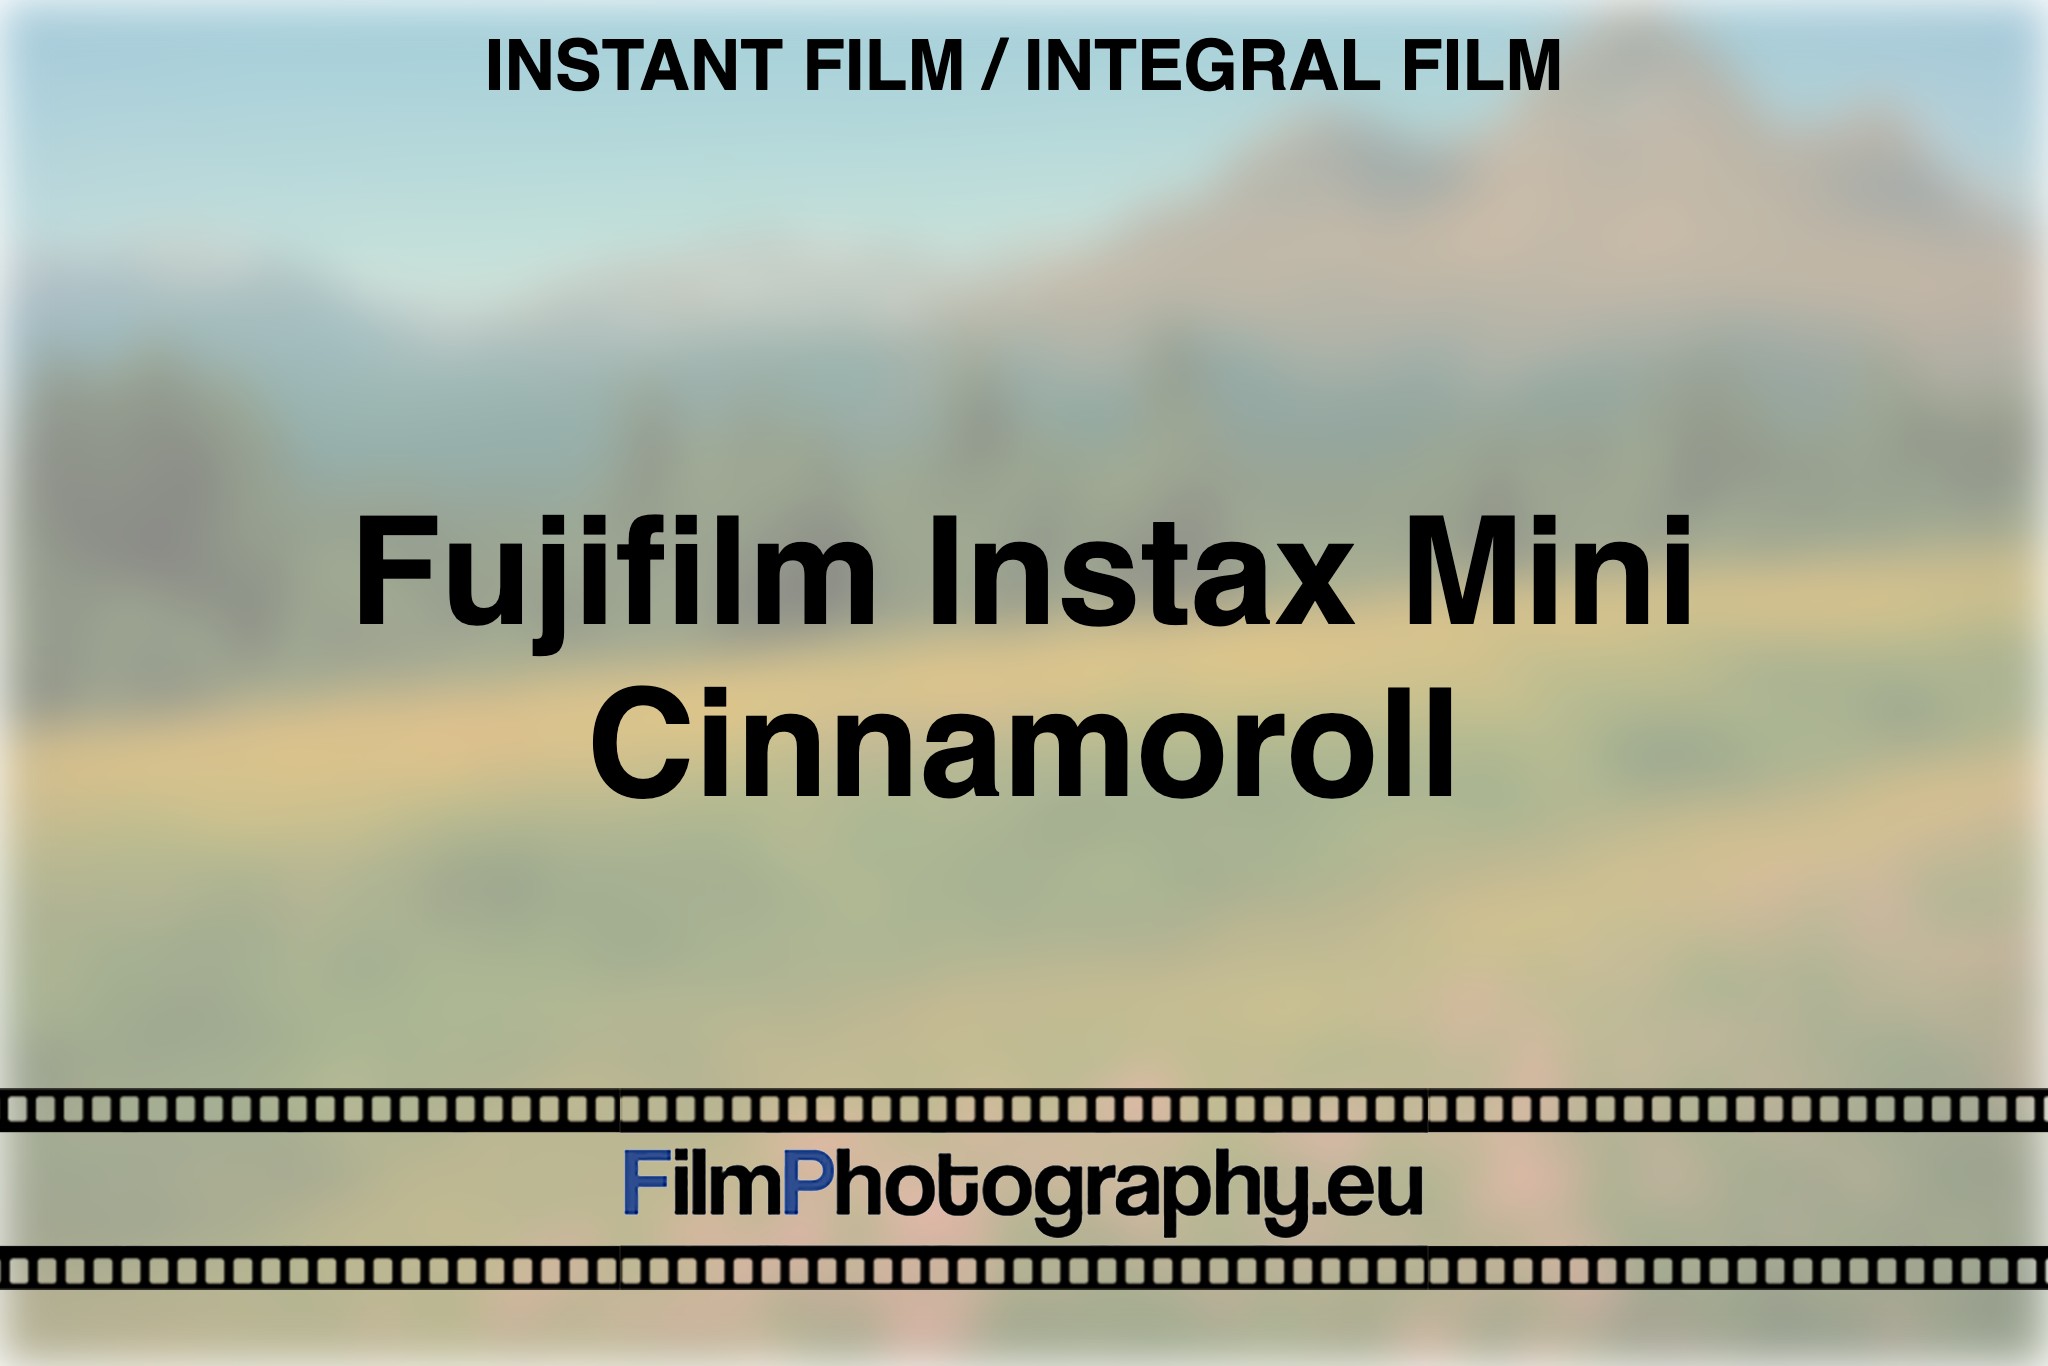 fujifilm-instax-mini-cinnamoroll-instant-film-integral-film-bnv